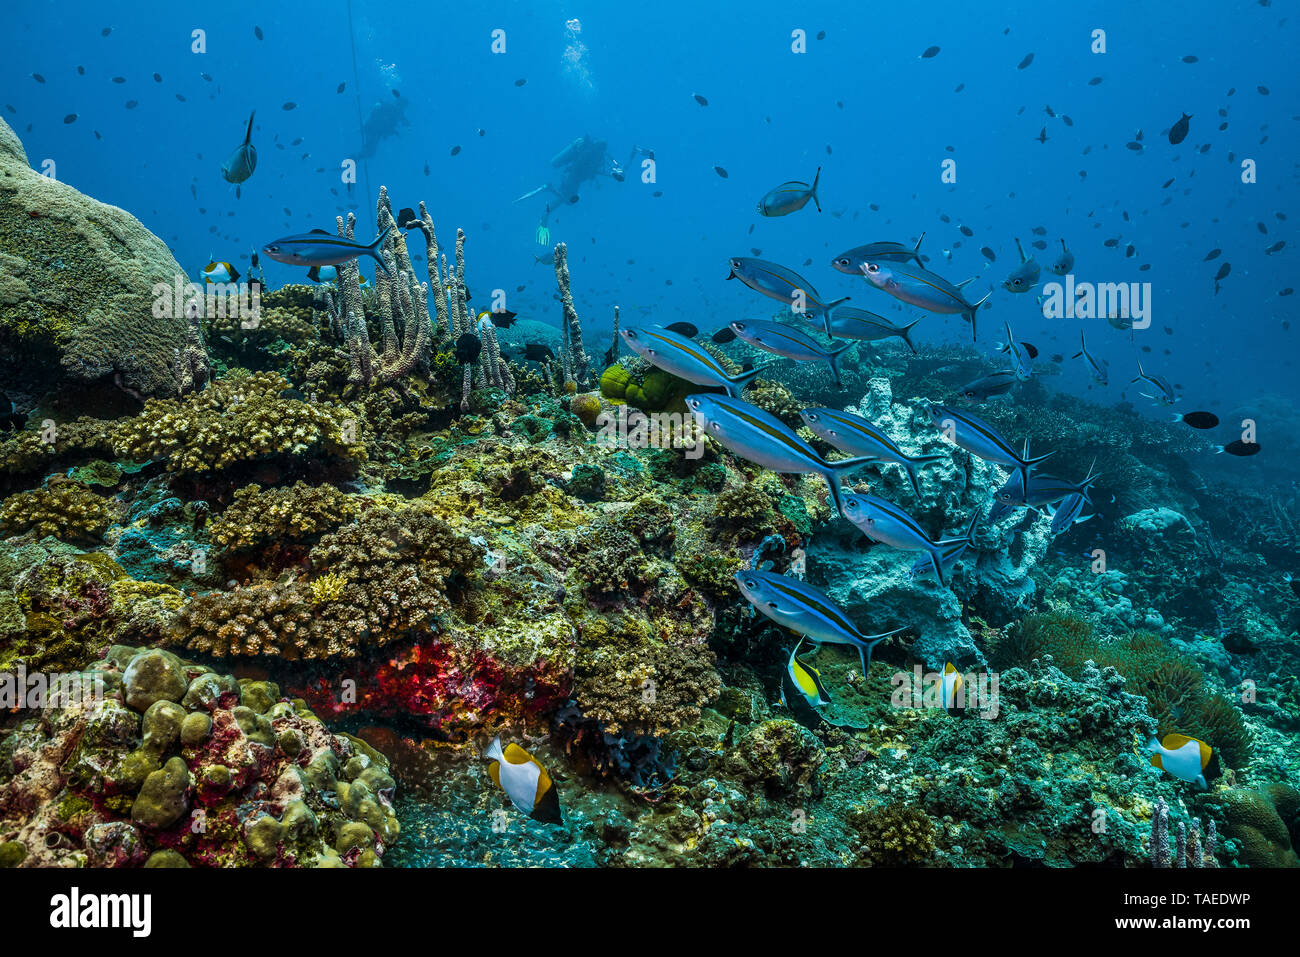 Tara Pacific Expedition - November 2017 Inglis Shoal seamount, Kimbe Bay, Papua Neu Guinea, Marine leben auf einer teilweise gebleicht reef Crest. Füsiliere und anderen Rifffischen. D: 20 m Stockfoto